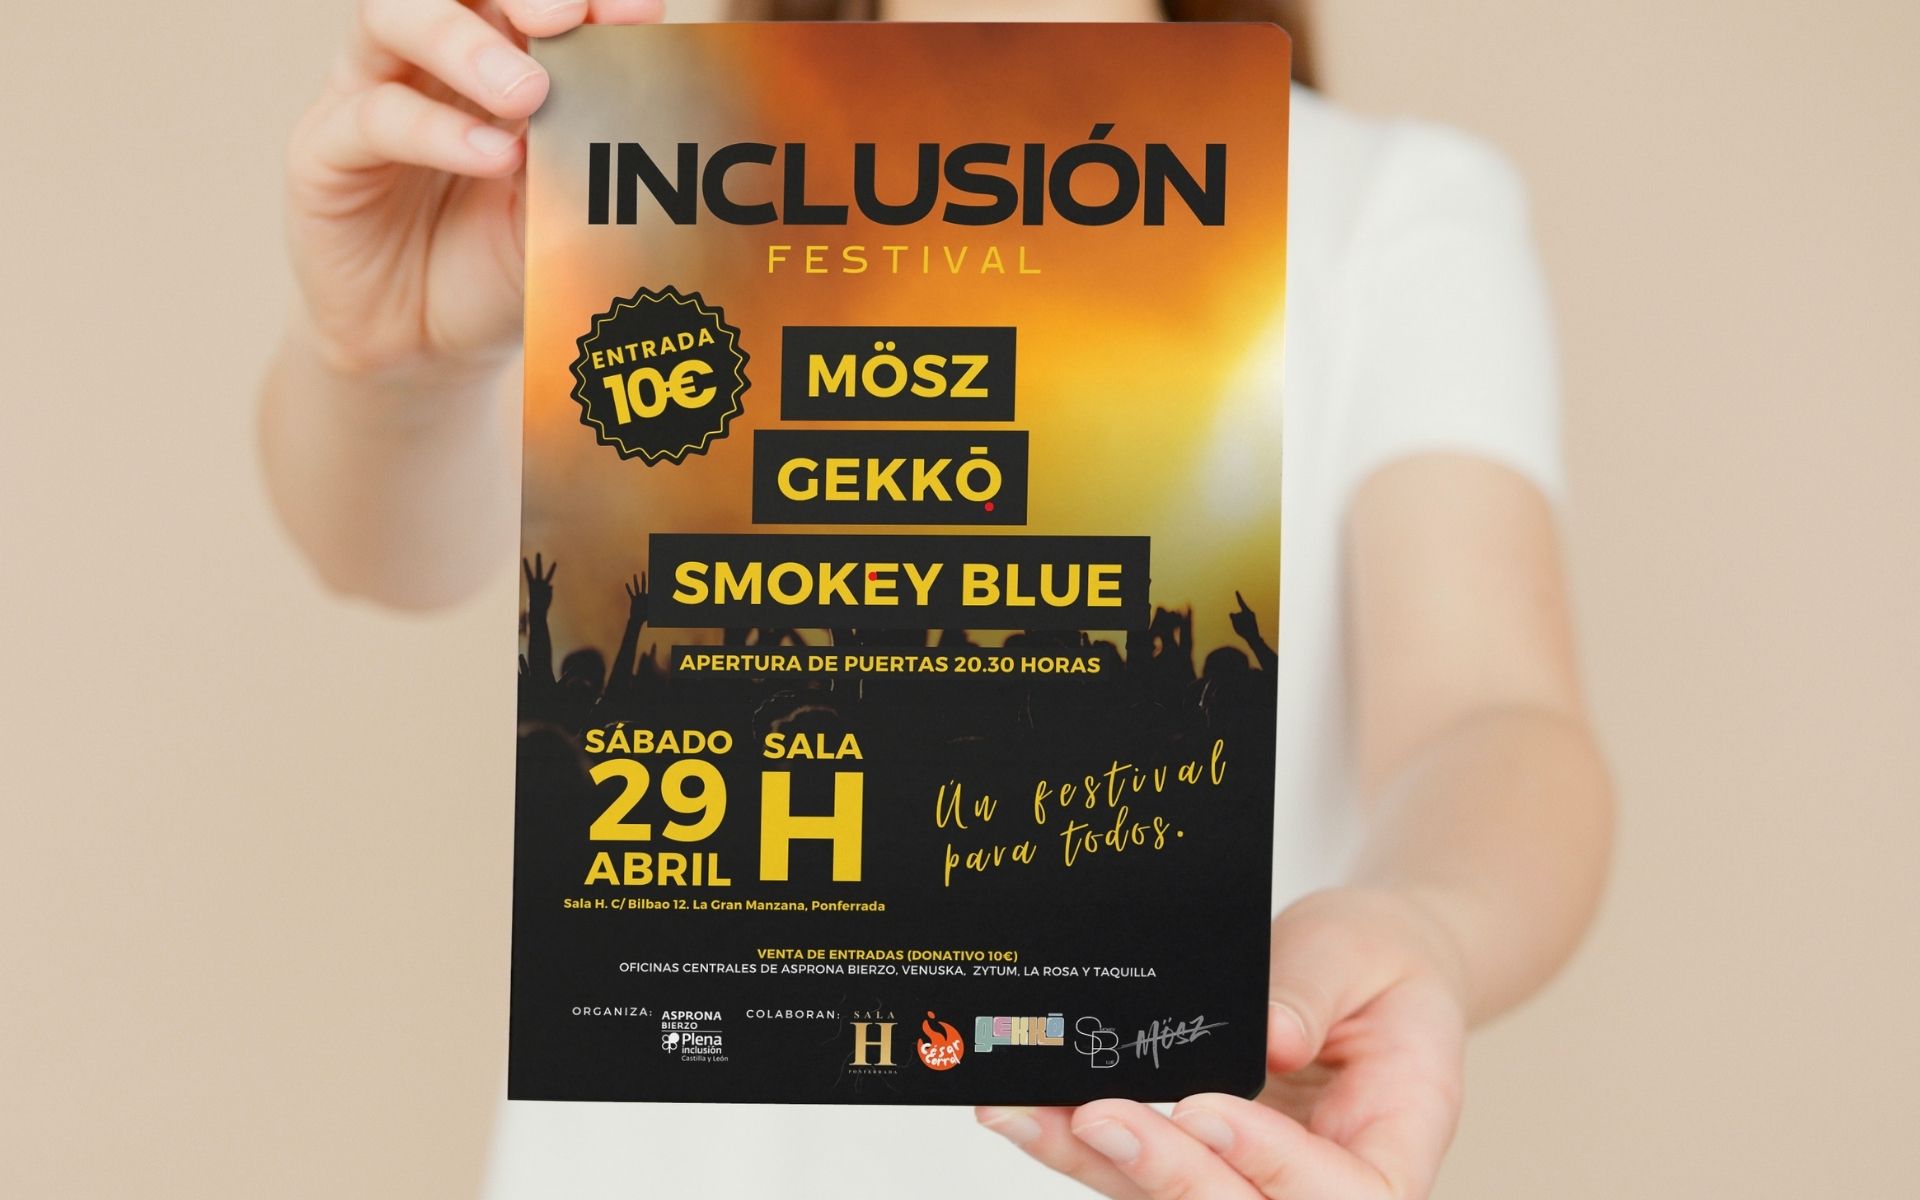 Asprona Bierzo estrena la celebración de su 30 aniversario con el Inclusión Festival 1